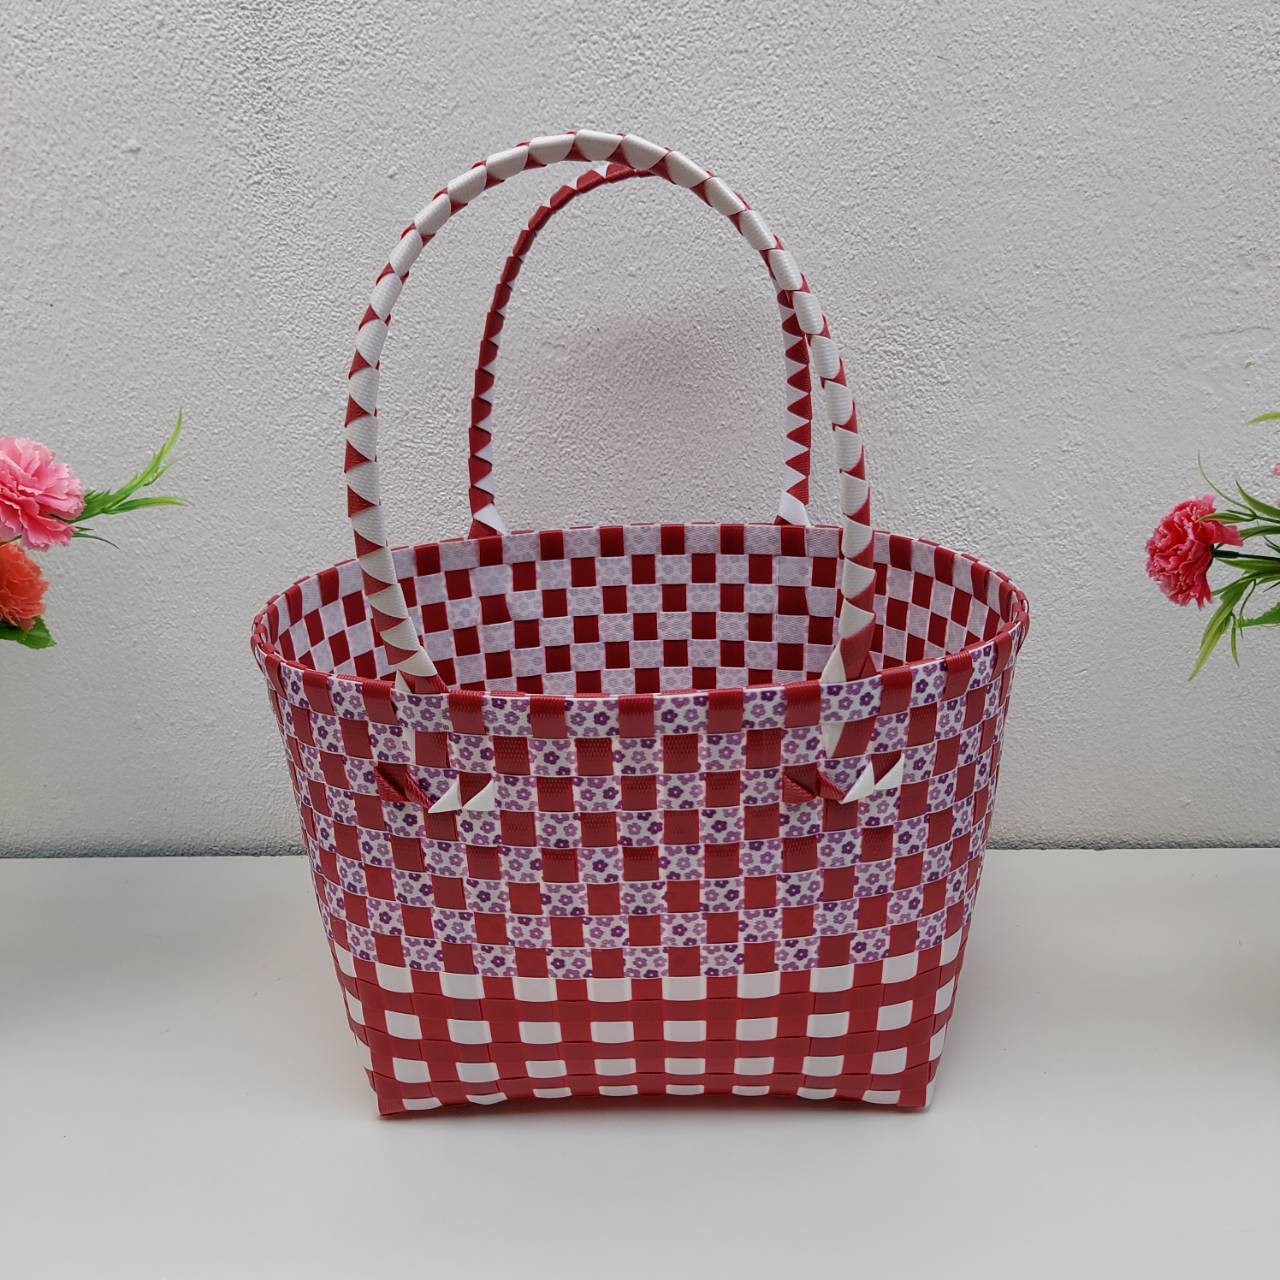 กระเป๋าสะพายทรงสี่เหลี่ยม สานเส้นพลาสติก กระเป๋าถือ  ตะกร้าสาน โทนแดง กว้าง18 ยาว 25 สูง 20 CMขอบปากตระกร้า สี แดงดอกไม้ม่วง สี แดงดอกไม้ม่วง